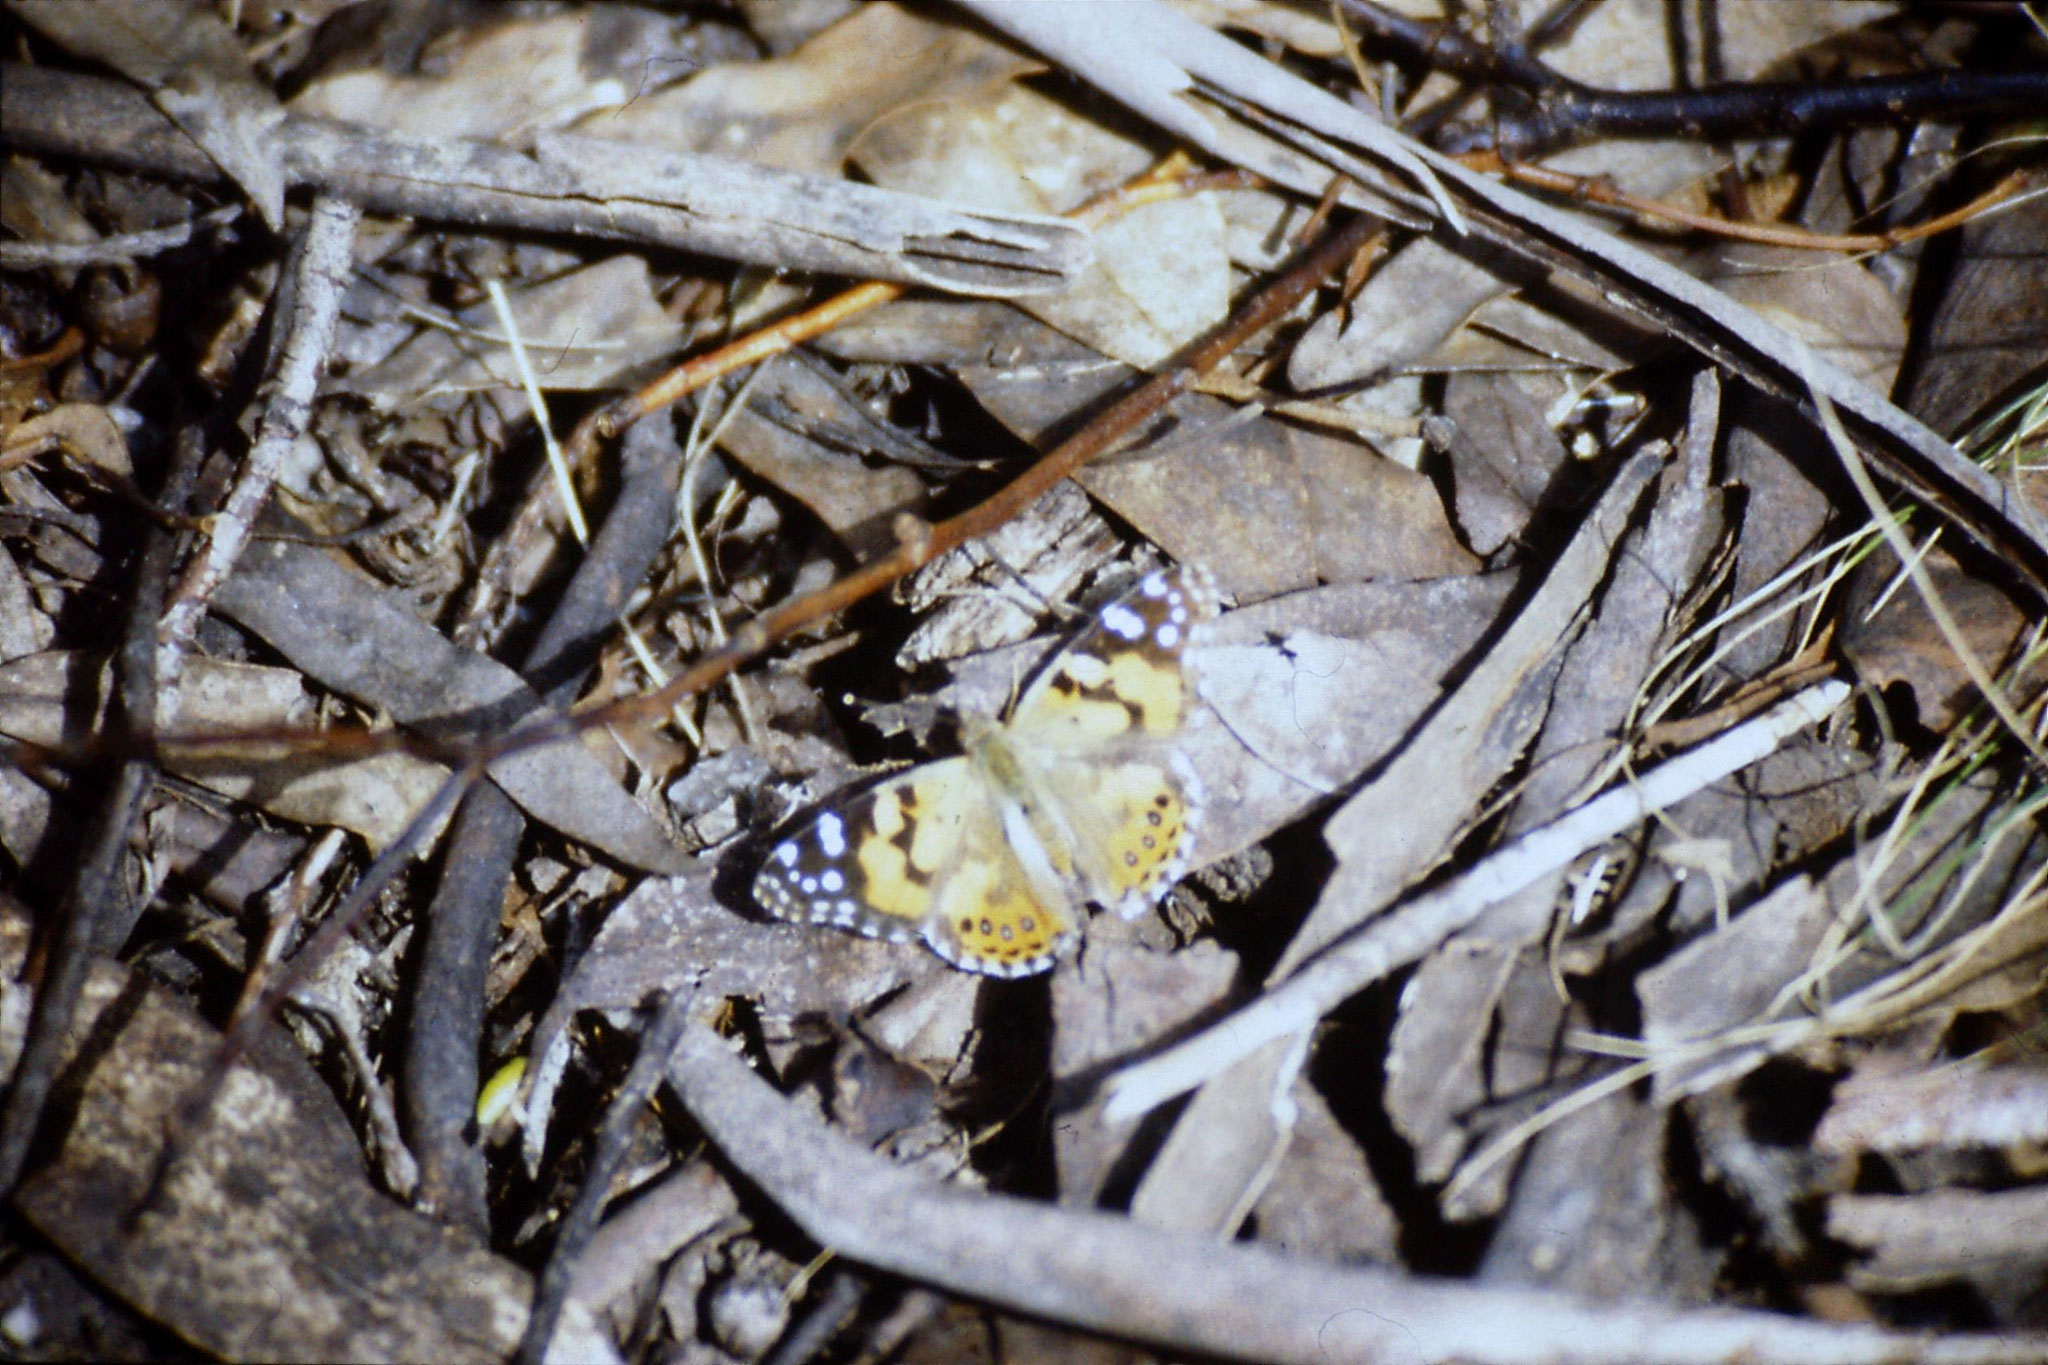 28/9/1990: 1: Mt Buffalo, butterfly